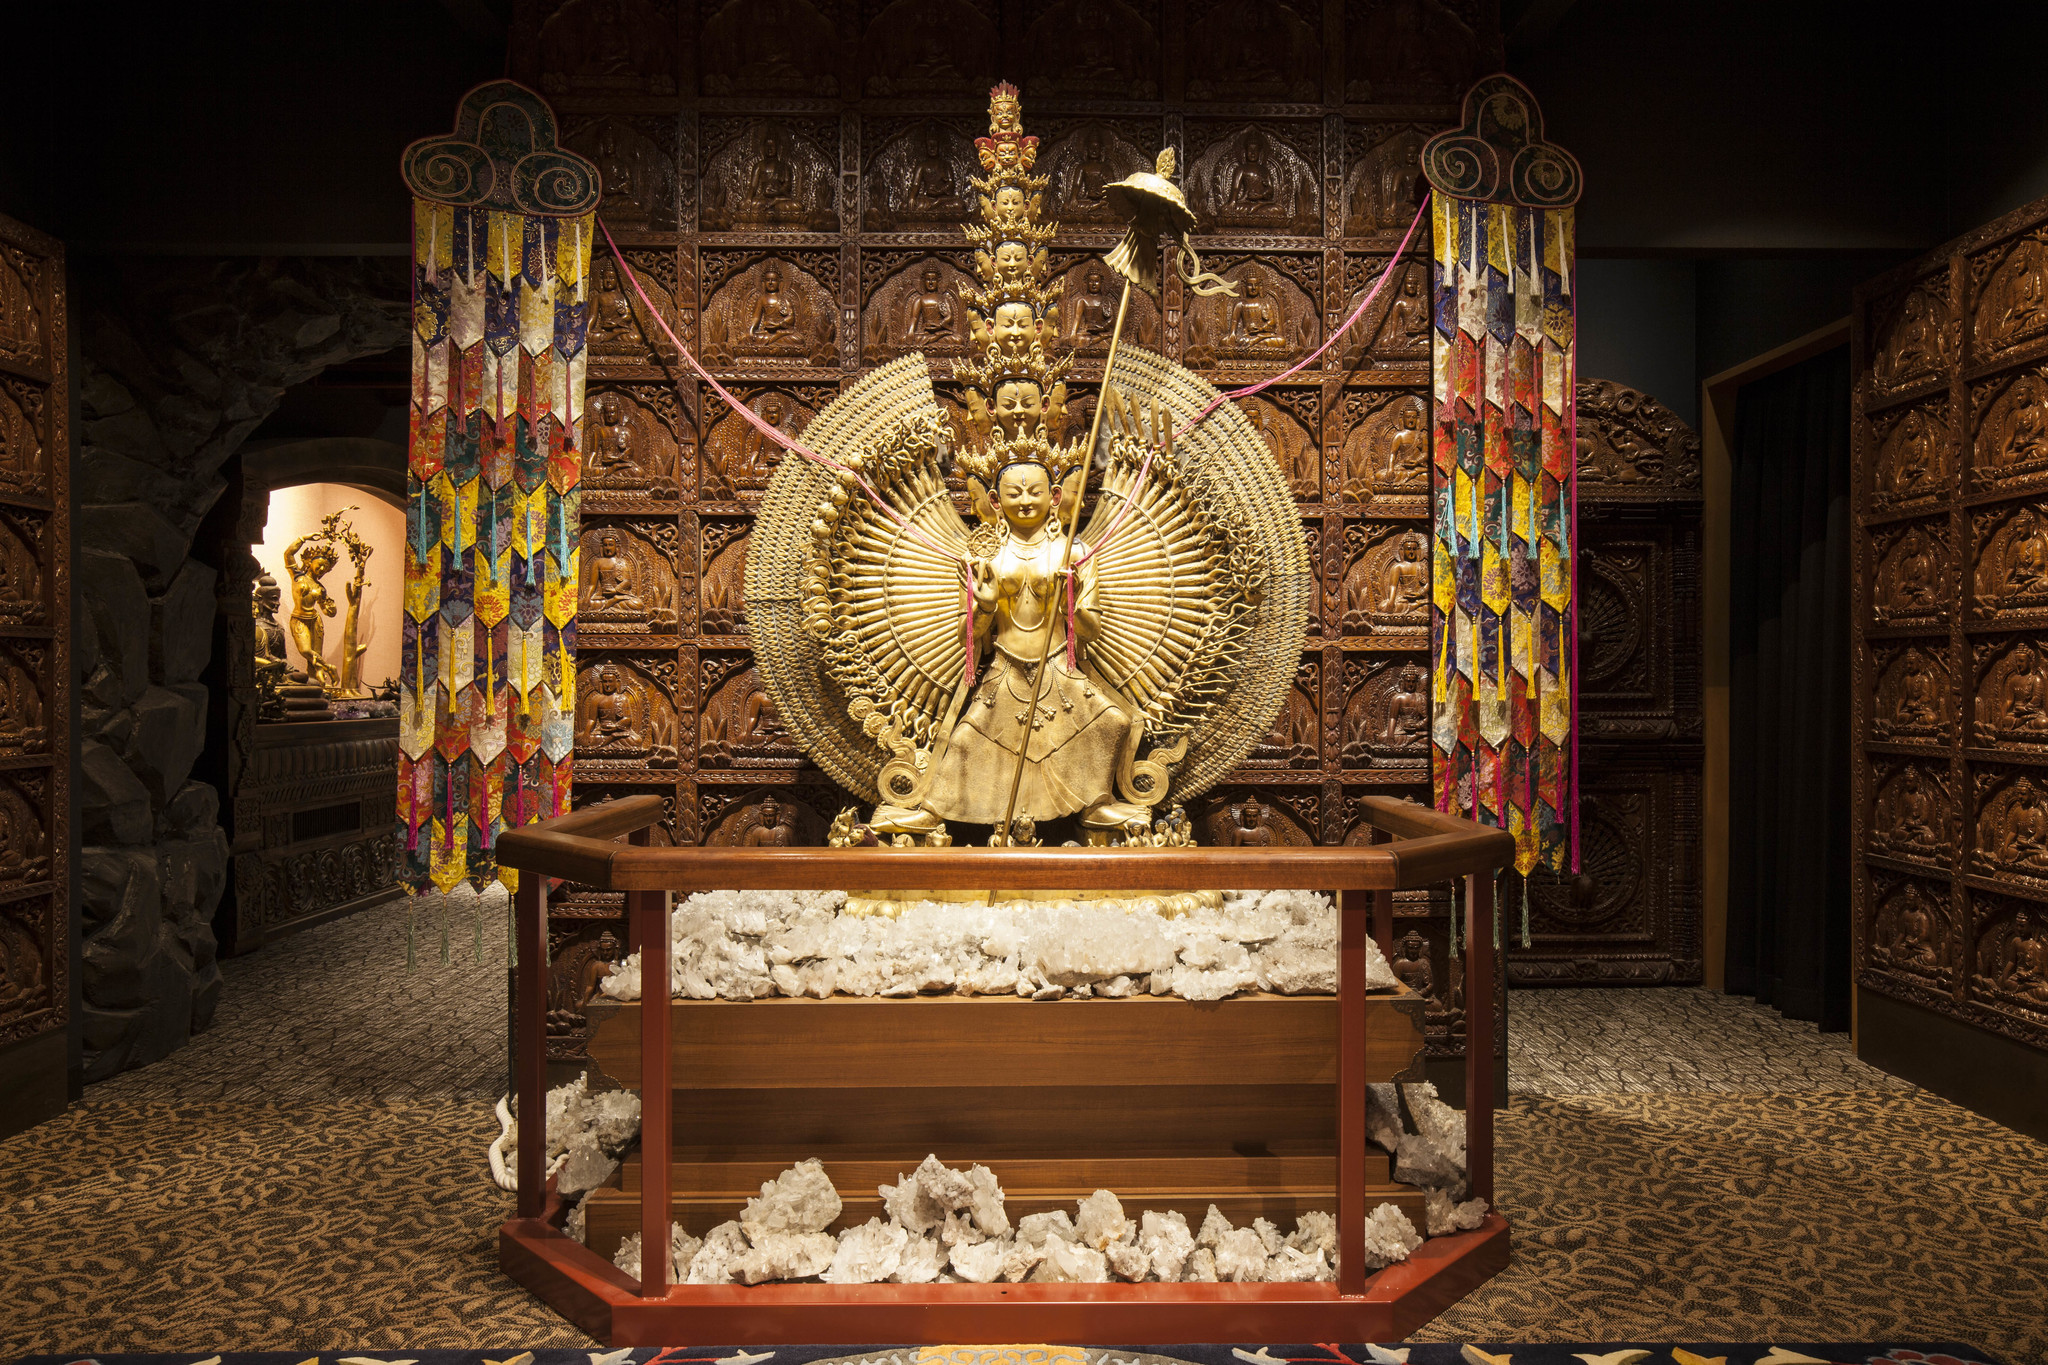 北インド・チベット仏教美術展「安養院寺宝堂」グランドオープン。9/21